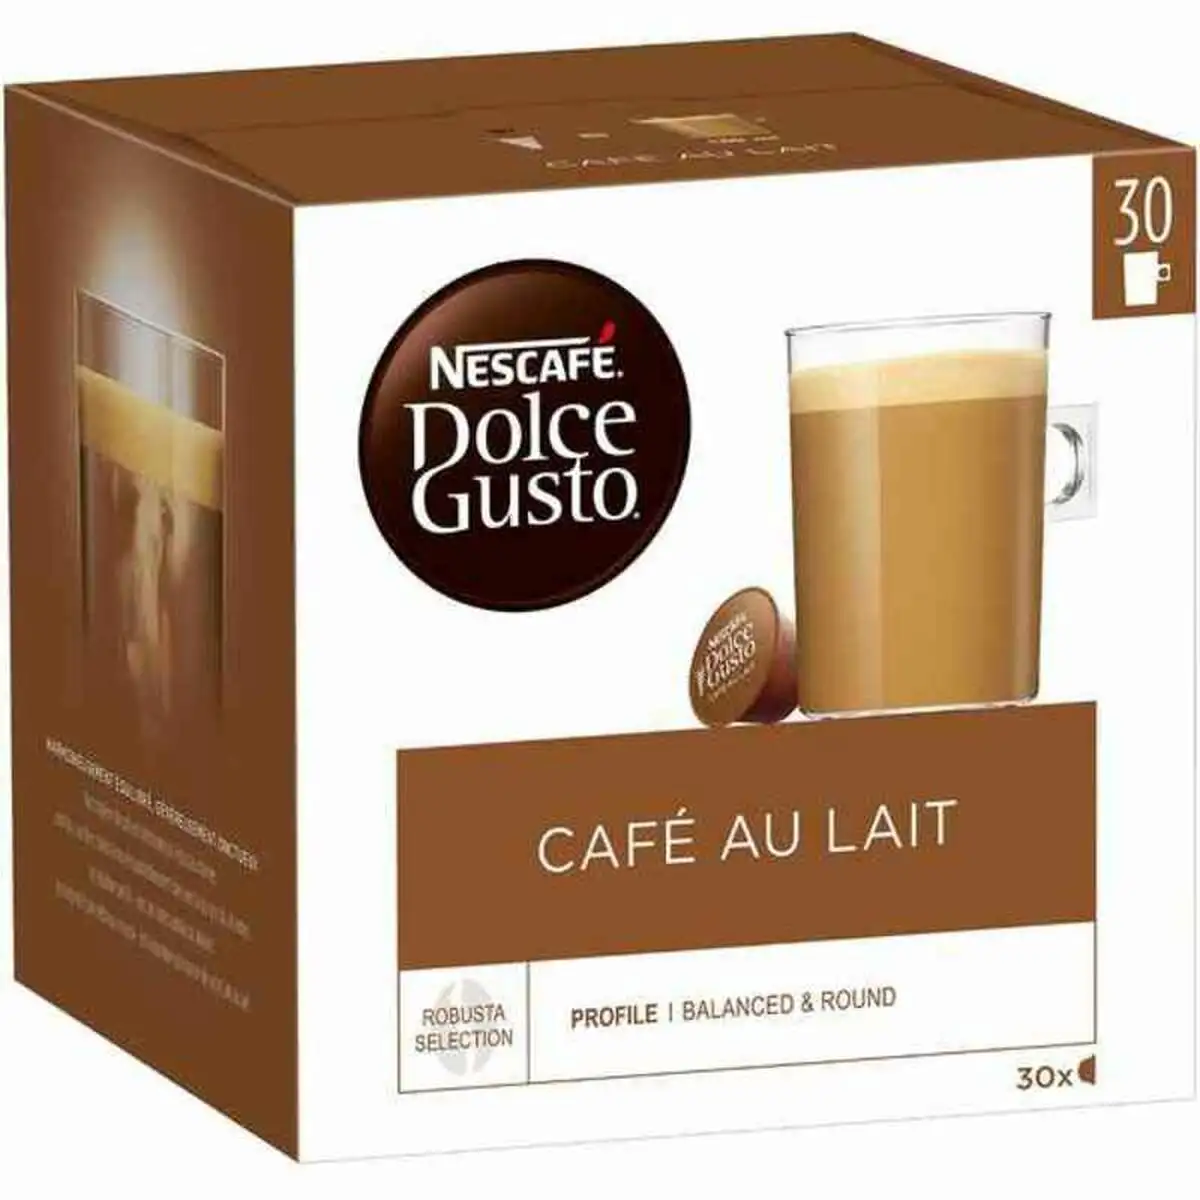 Capsules de cafe nescafe dolce gusto cafe au lait 1 unites 30 unites_1532. DIAYTAR SENEGAL - Là où Chaque Clic Compte. Parcourez notre boutique en ligne et laissez-vous guider vers des trouvailles uniques qui enrichiront votre quotidien.